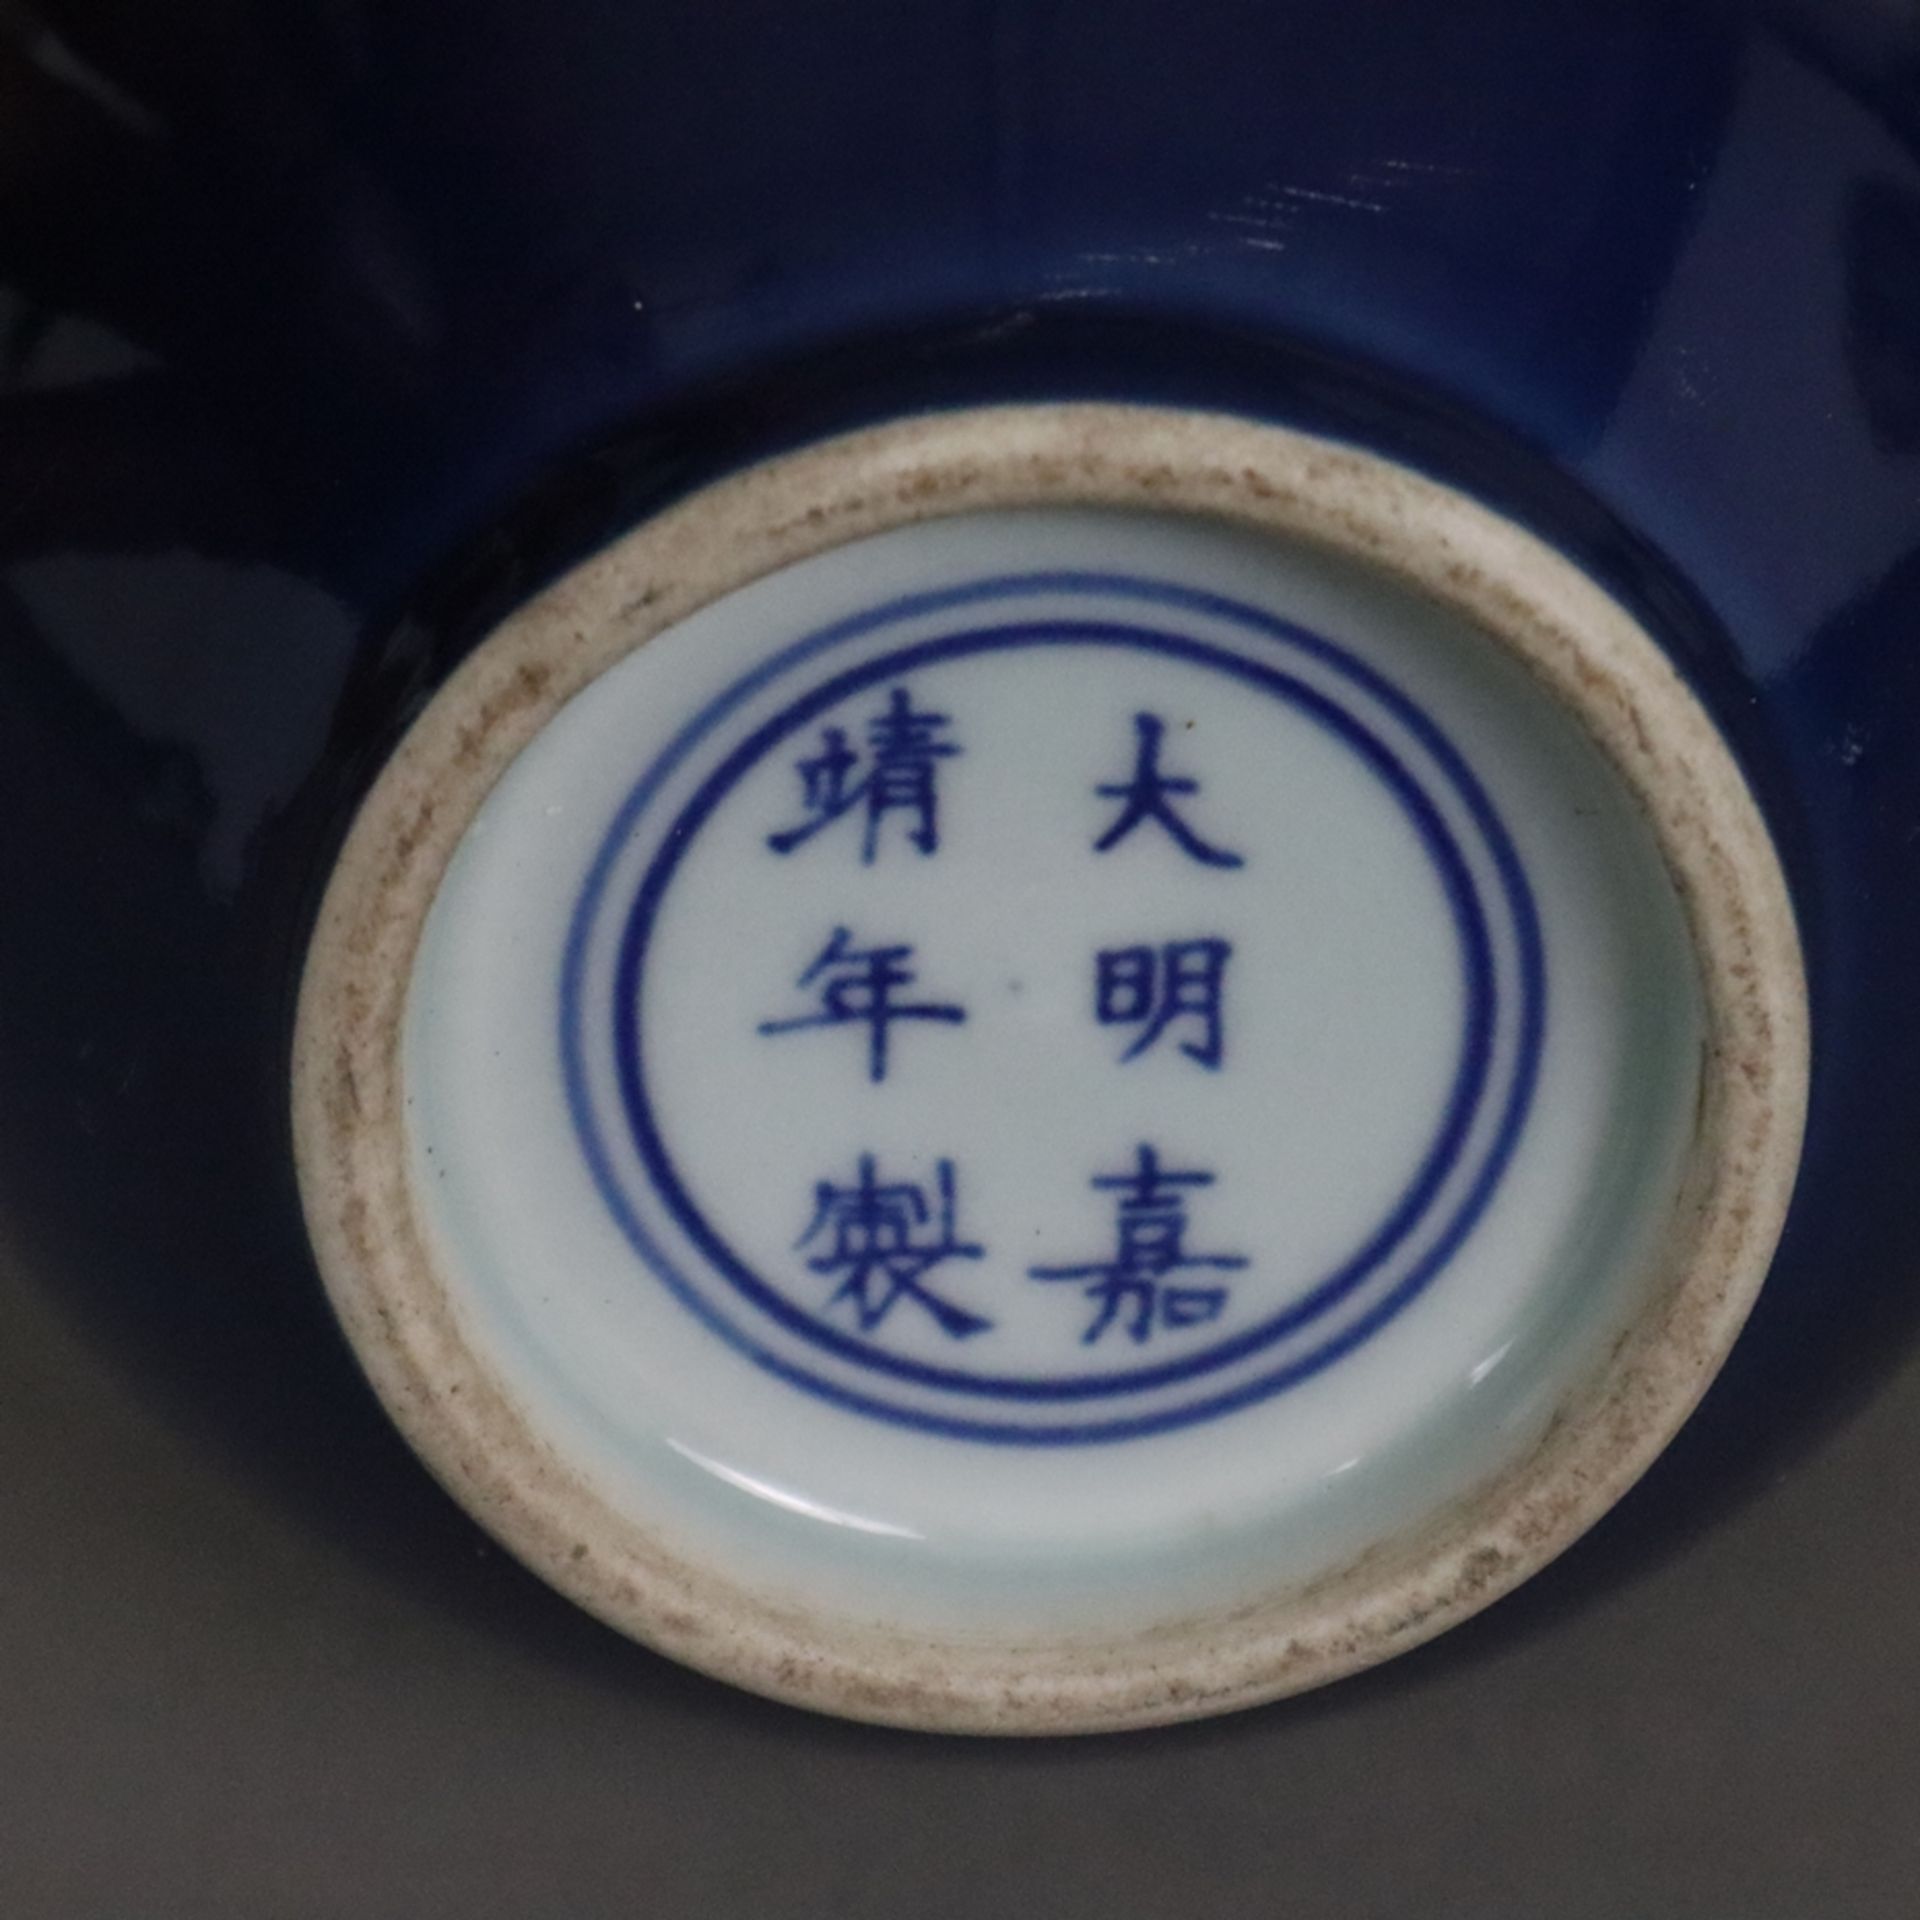 Doppelkürbisvase - China, Wandung insgesamt mit einer dunkelblauen Glasur bedeckt, Boden klar glasi - Bild 5 aus 5